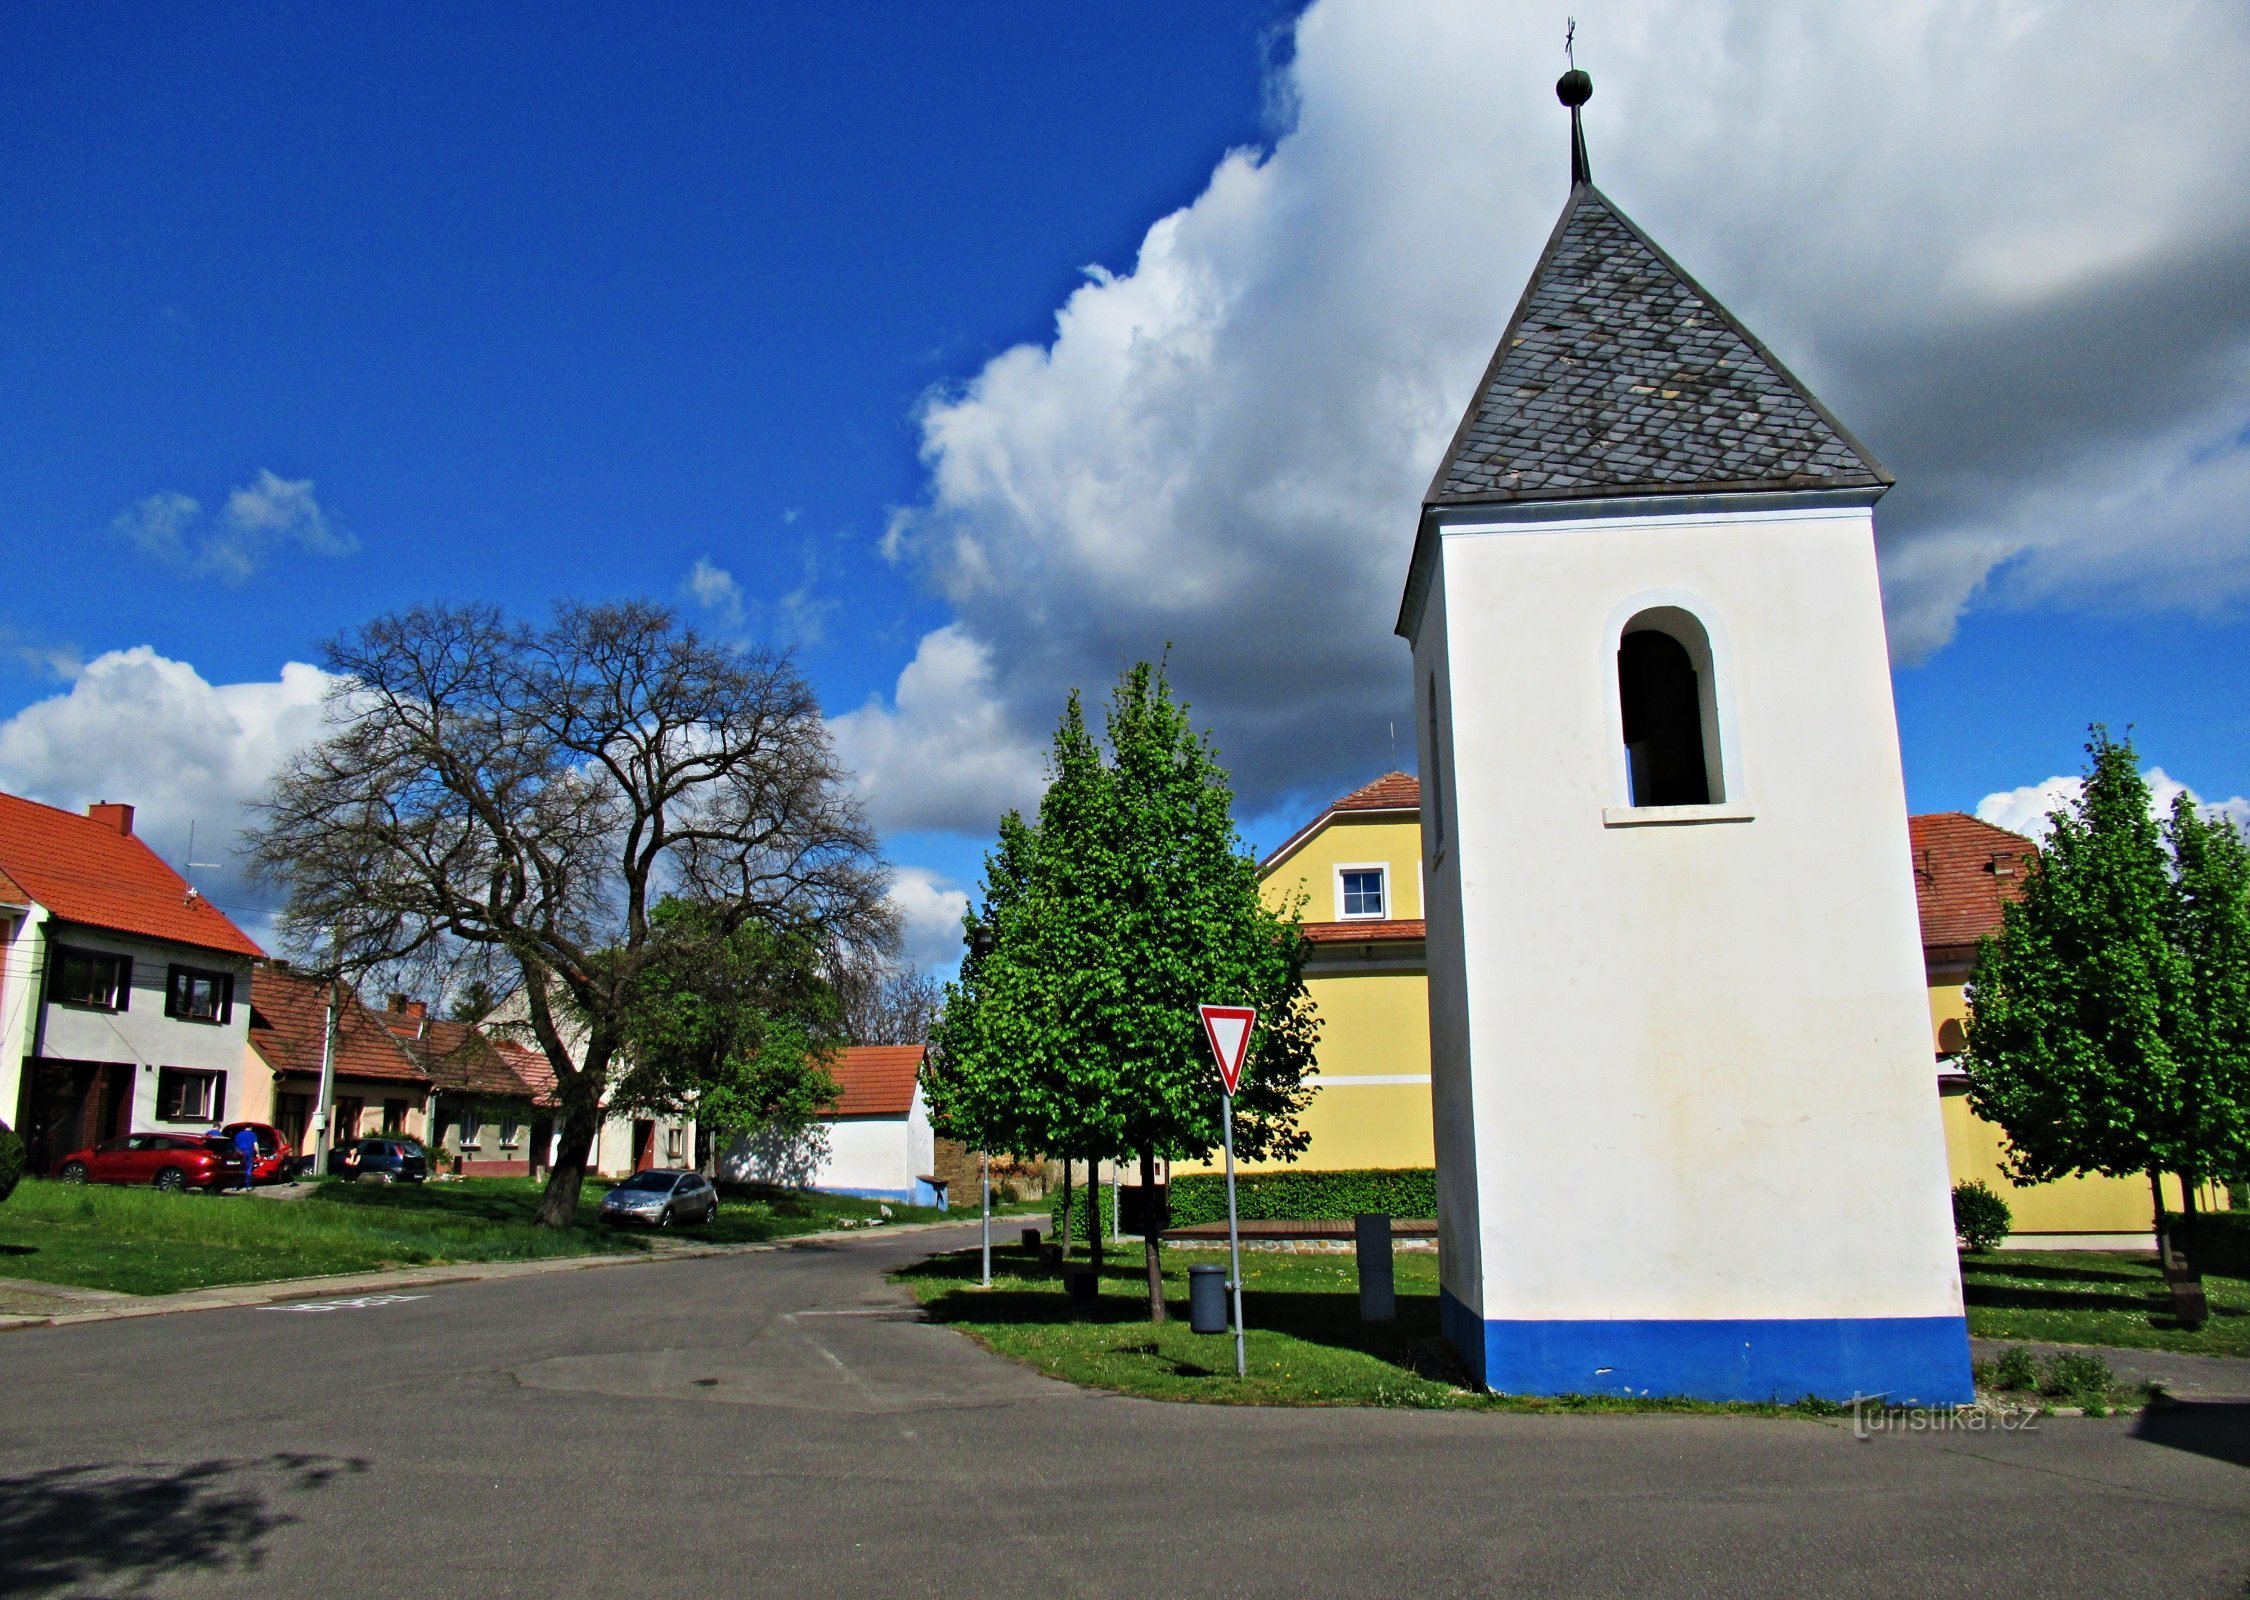 trung tâm của ngôi làng với tháp chuông